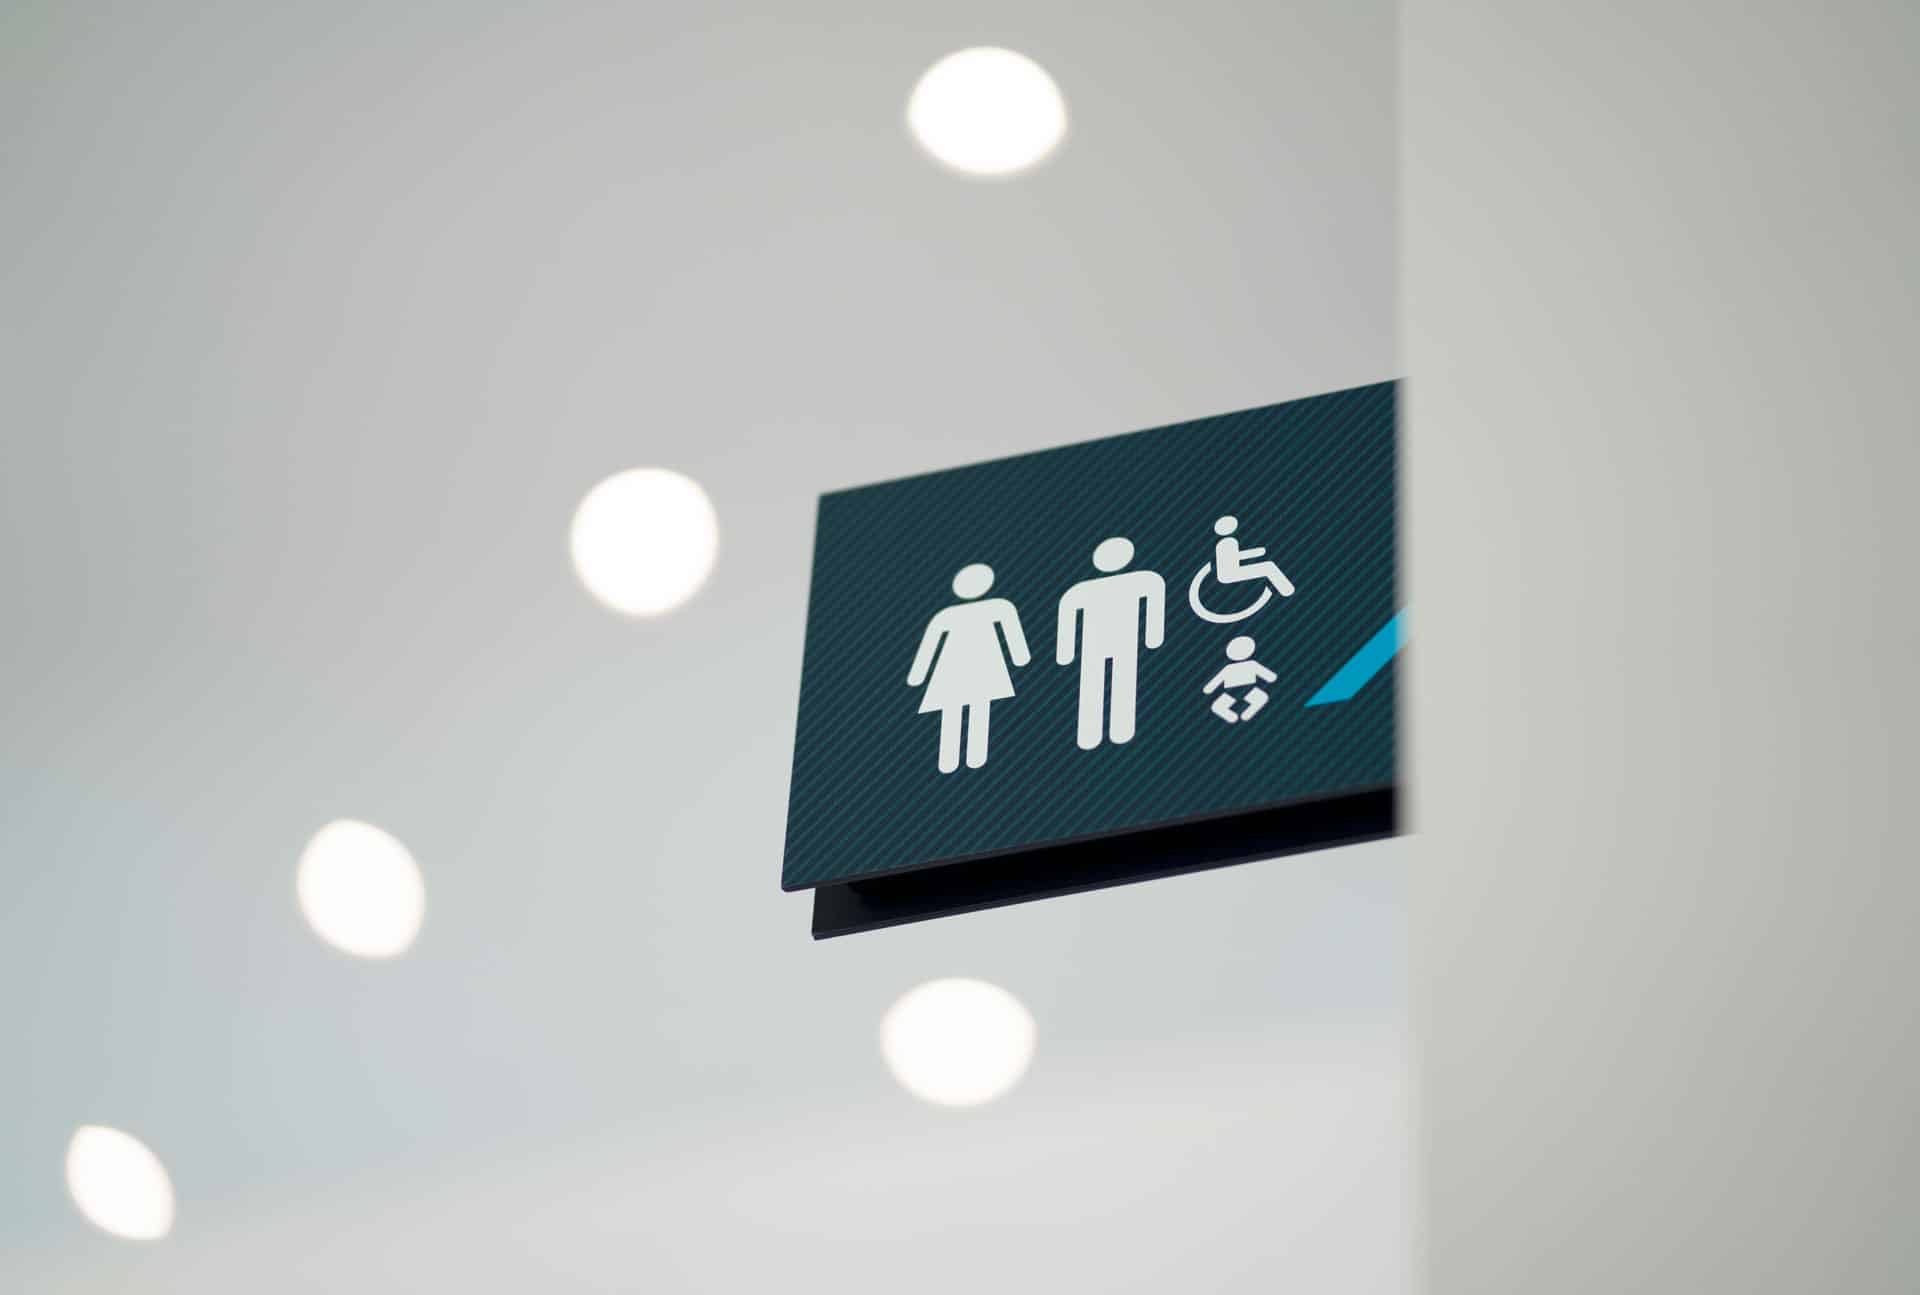 Arium Design - Identification de service en potence pour les toilettes de la bibliothèque du Pôle Culturel de Chambly.